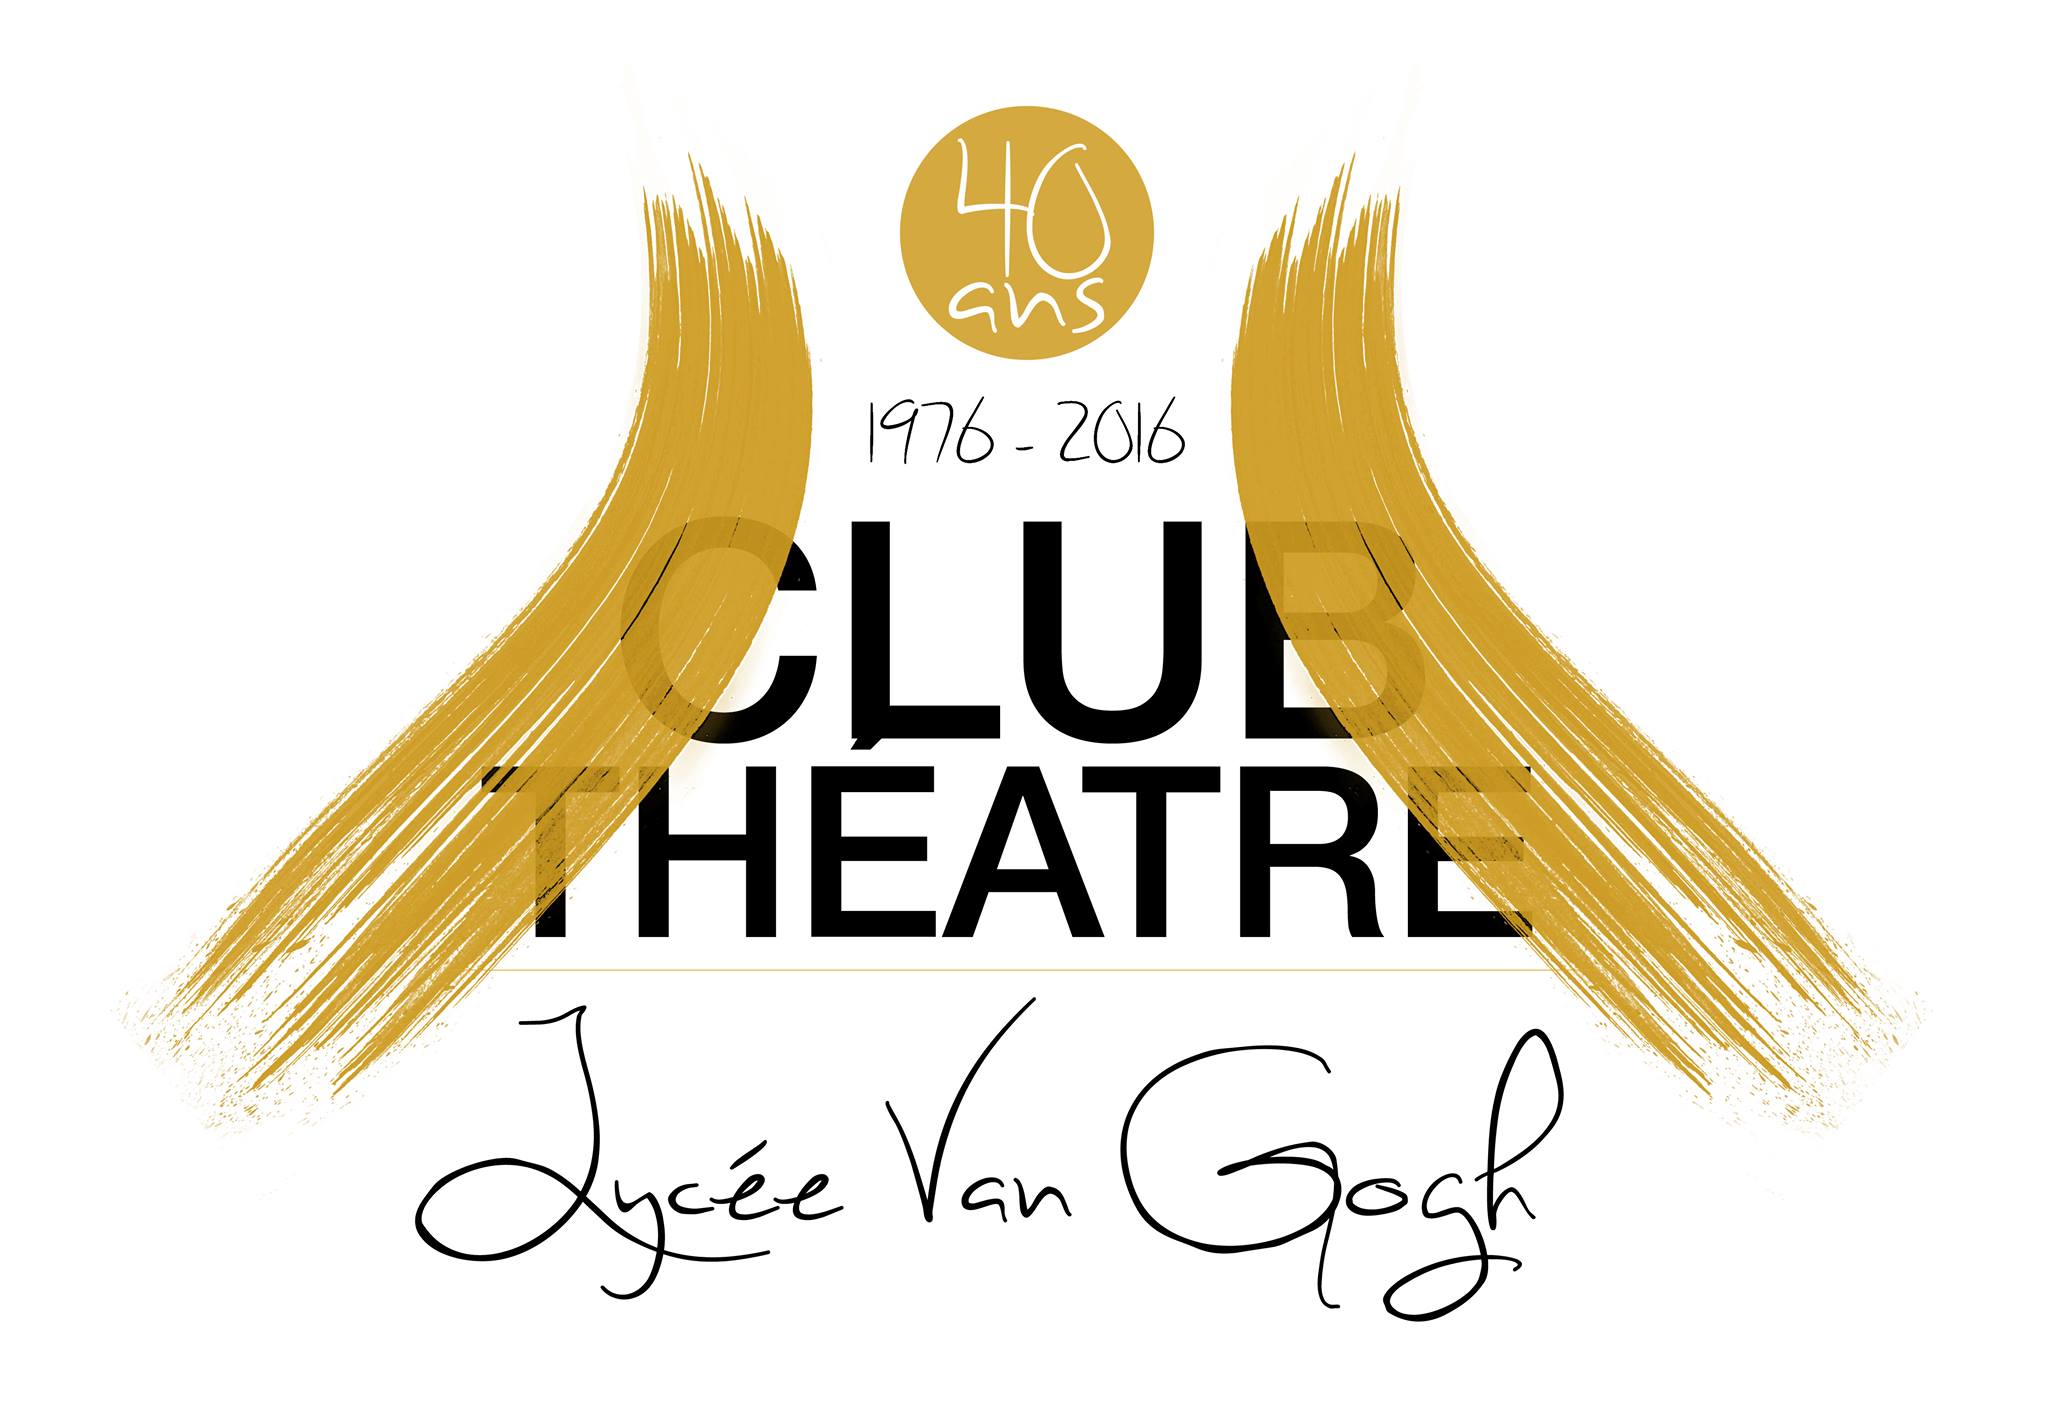 Club Théâtre Van Gogh